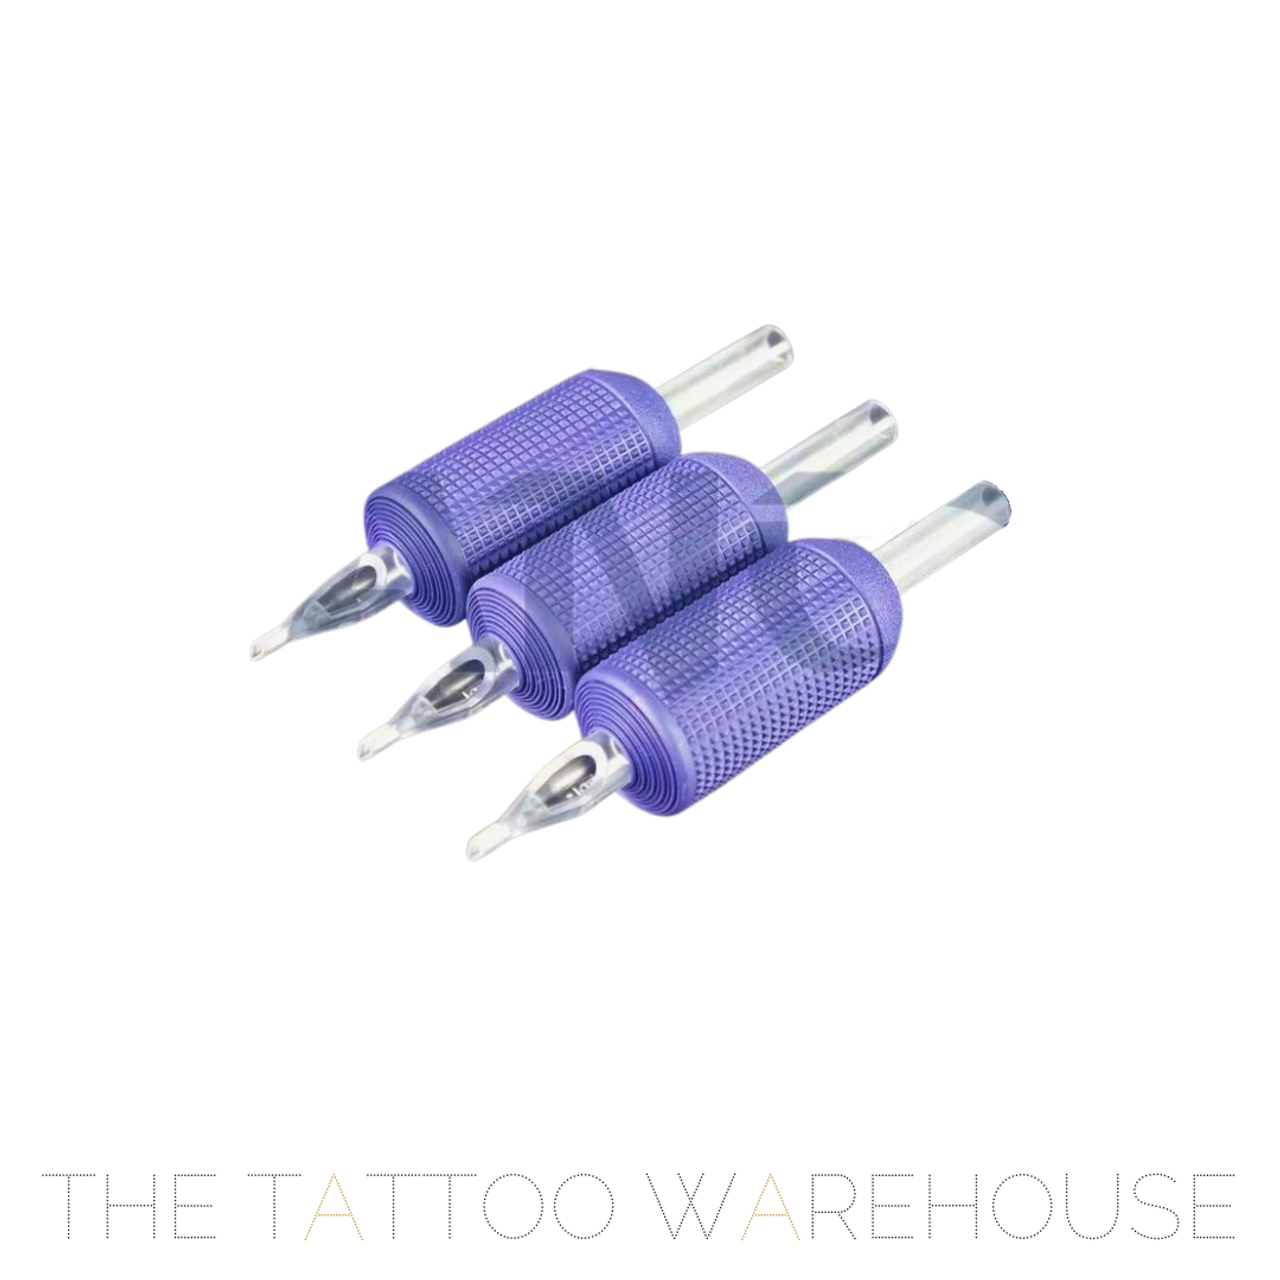 Tattoo Grip Aluminum Tattoo Cartridge Grip Tubes Bar for Tattoo Machine  Tattoo Supplies Tools